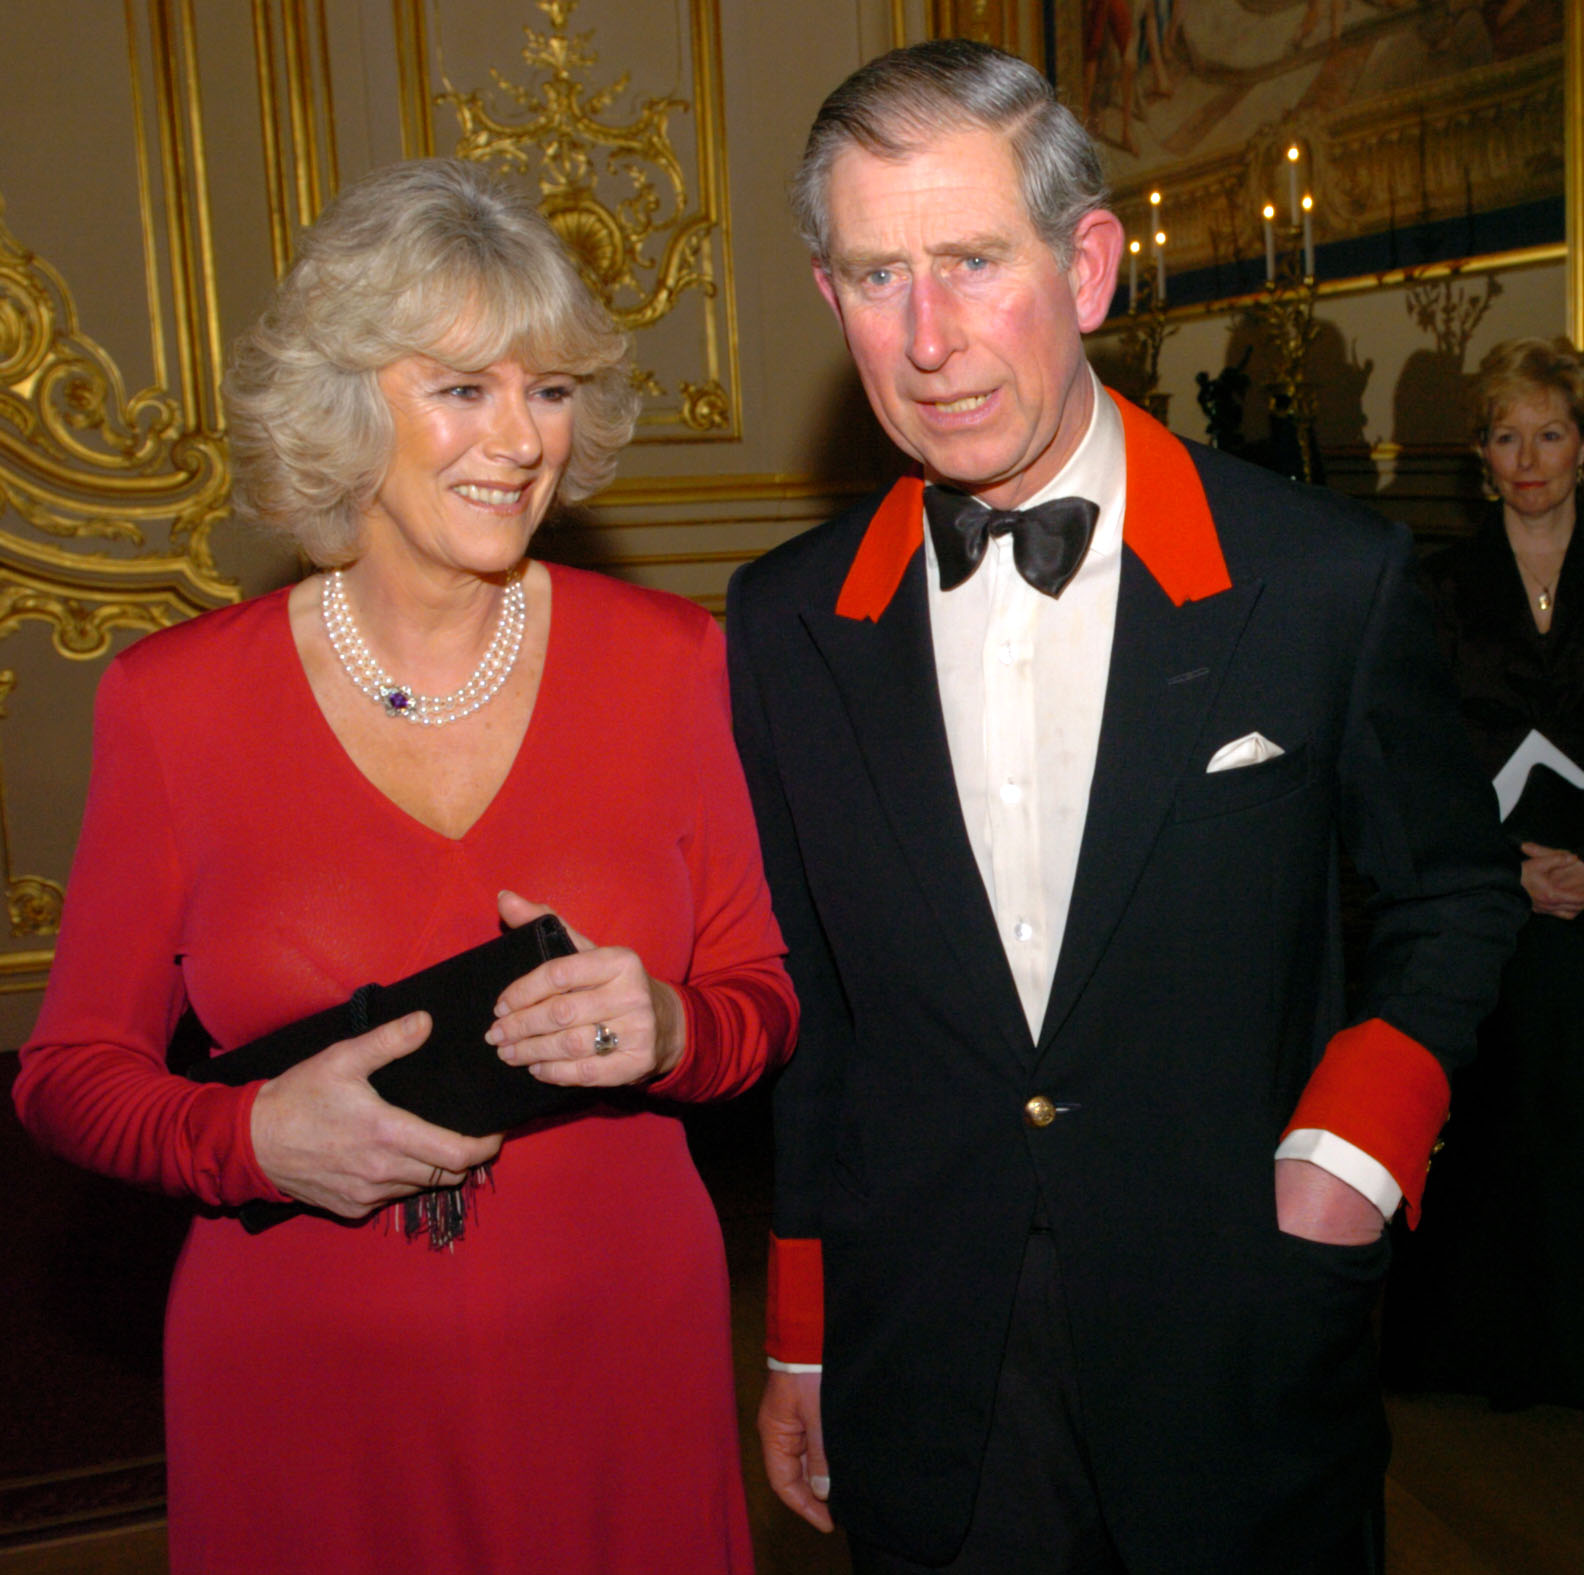 Die Verlobung von Charles und Camilla auf Schloss Windsor im Februar 2005